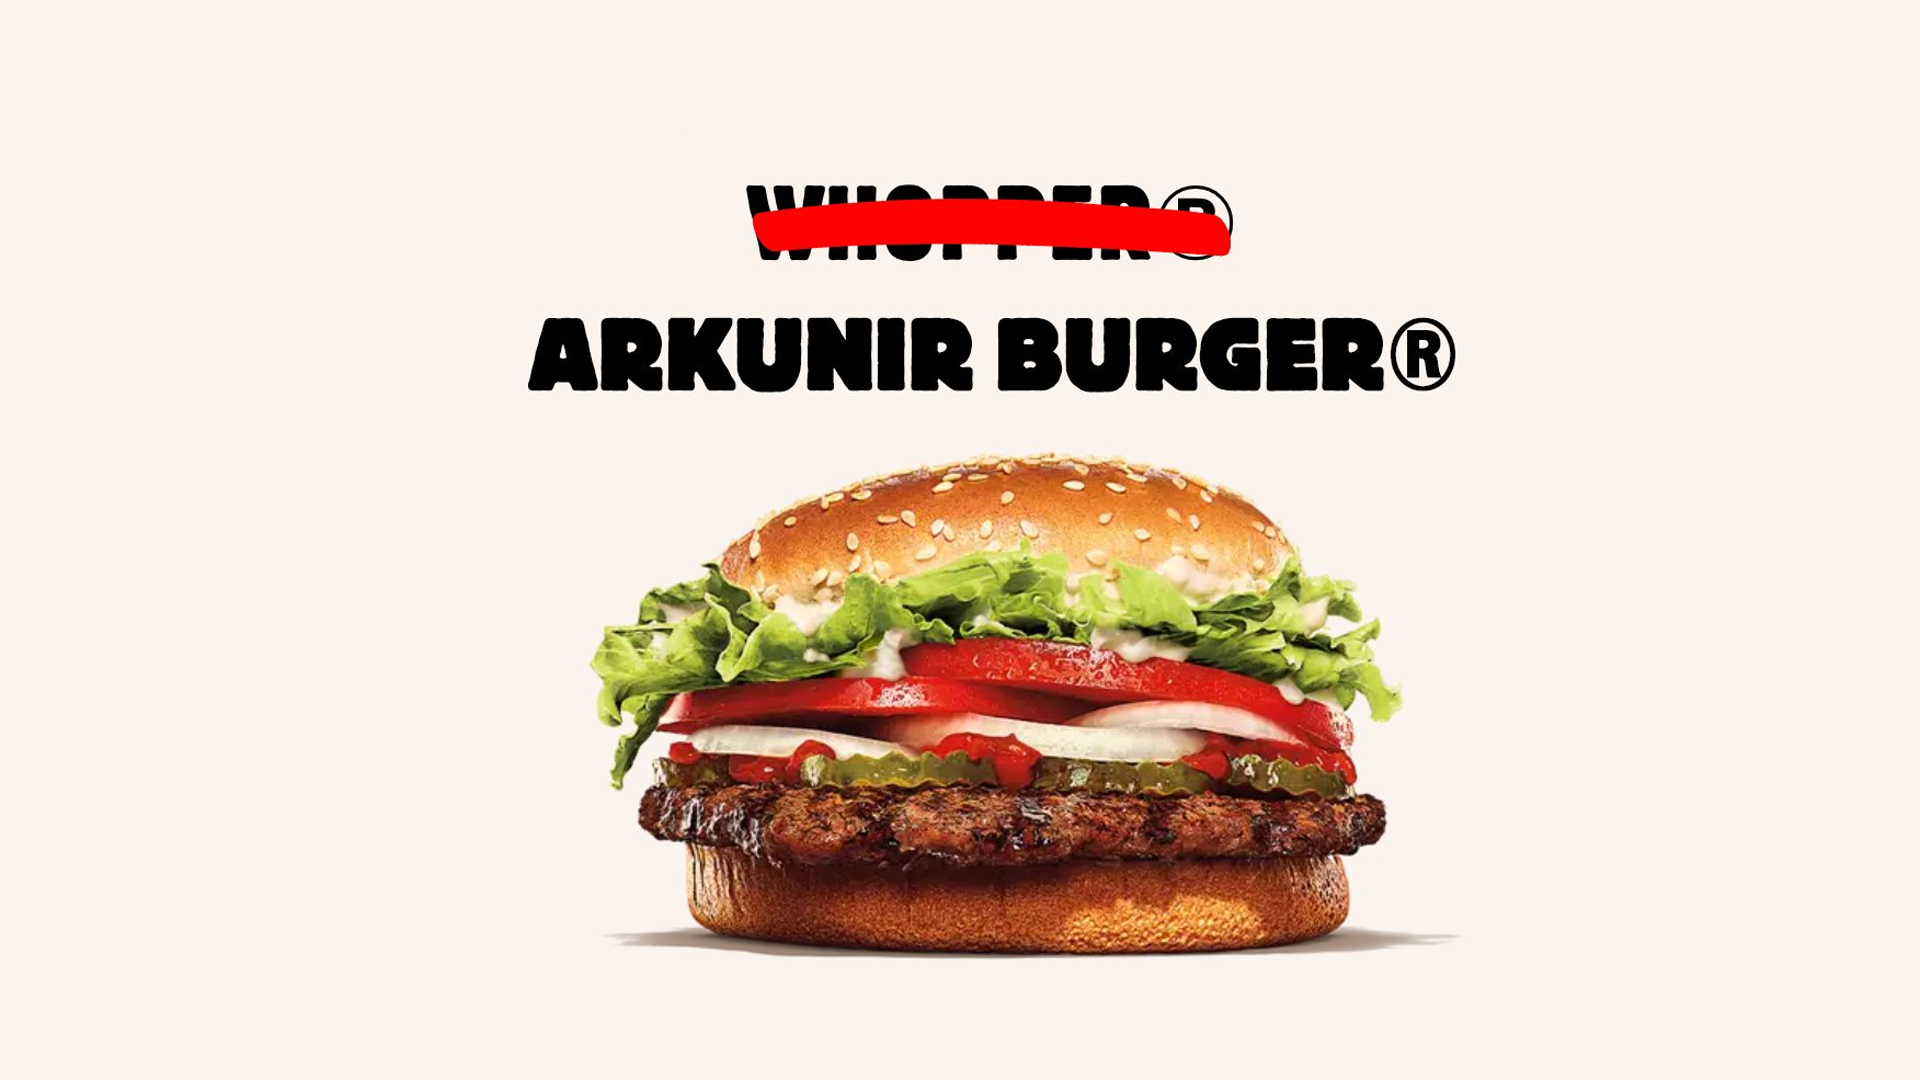 Après plus de 100 000 RT sur Twitter, Arkunir va avoir son propre burger chez Burger King